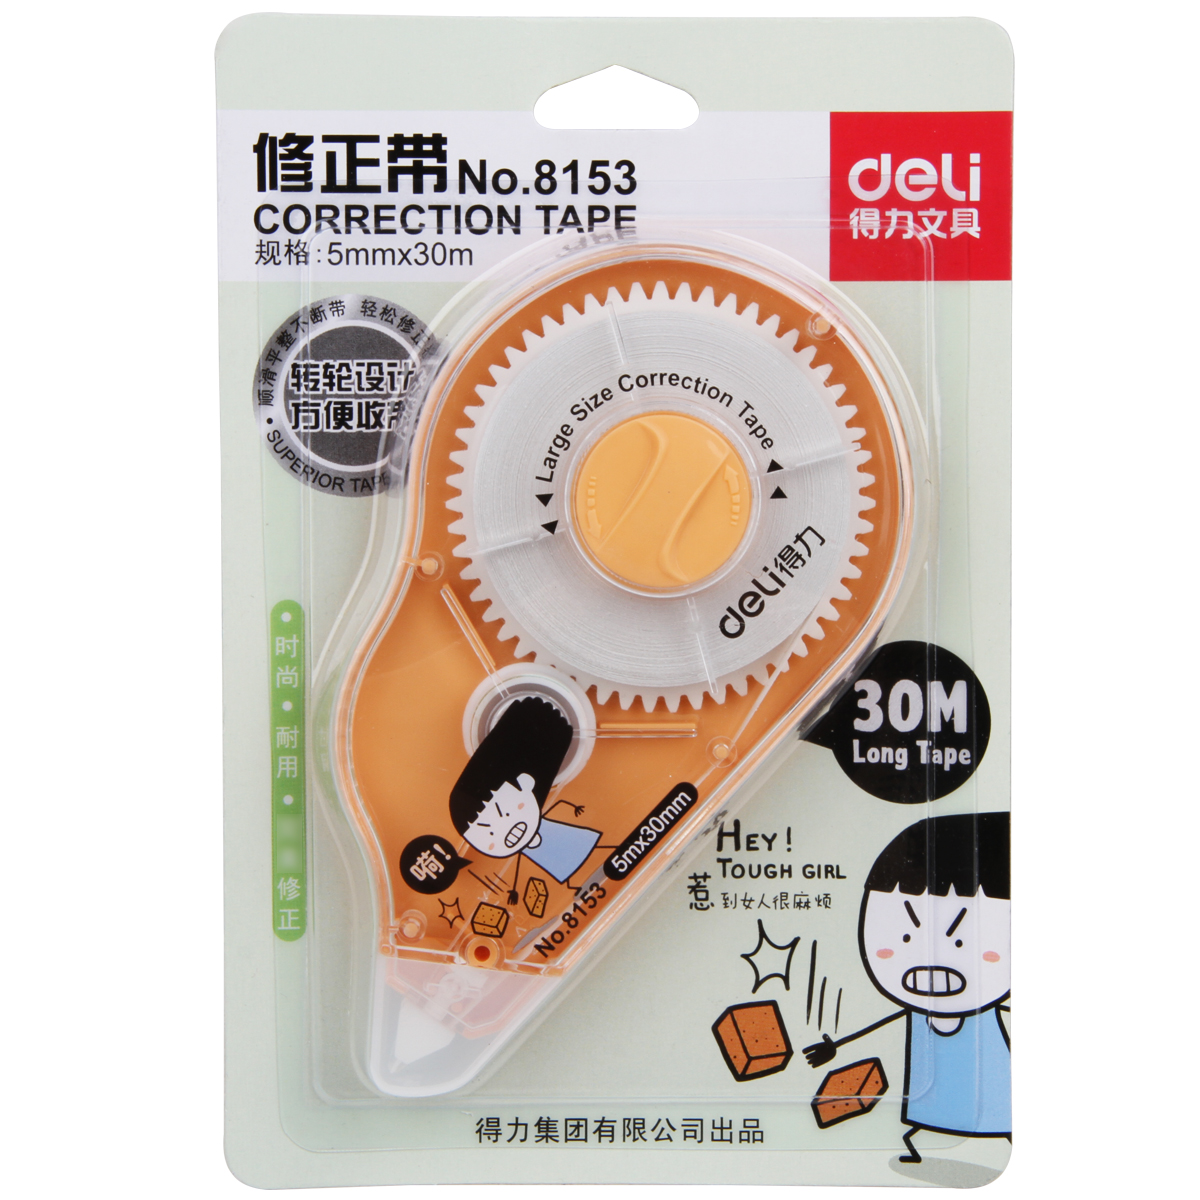 Deli-8153 Correction Tape